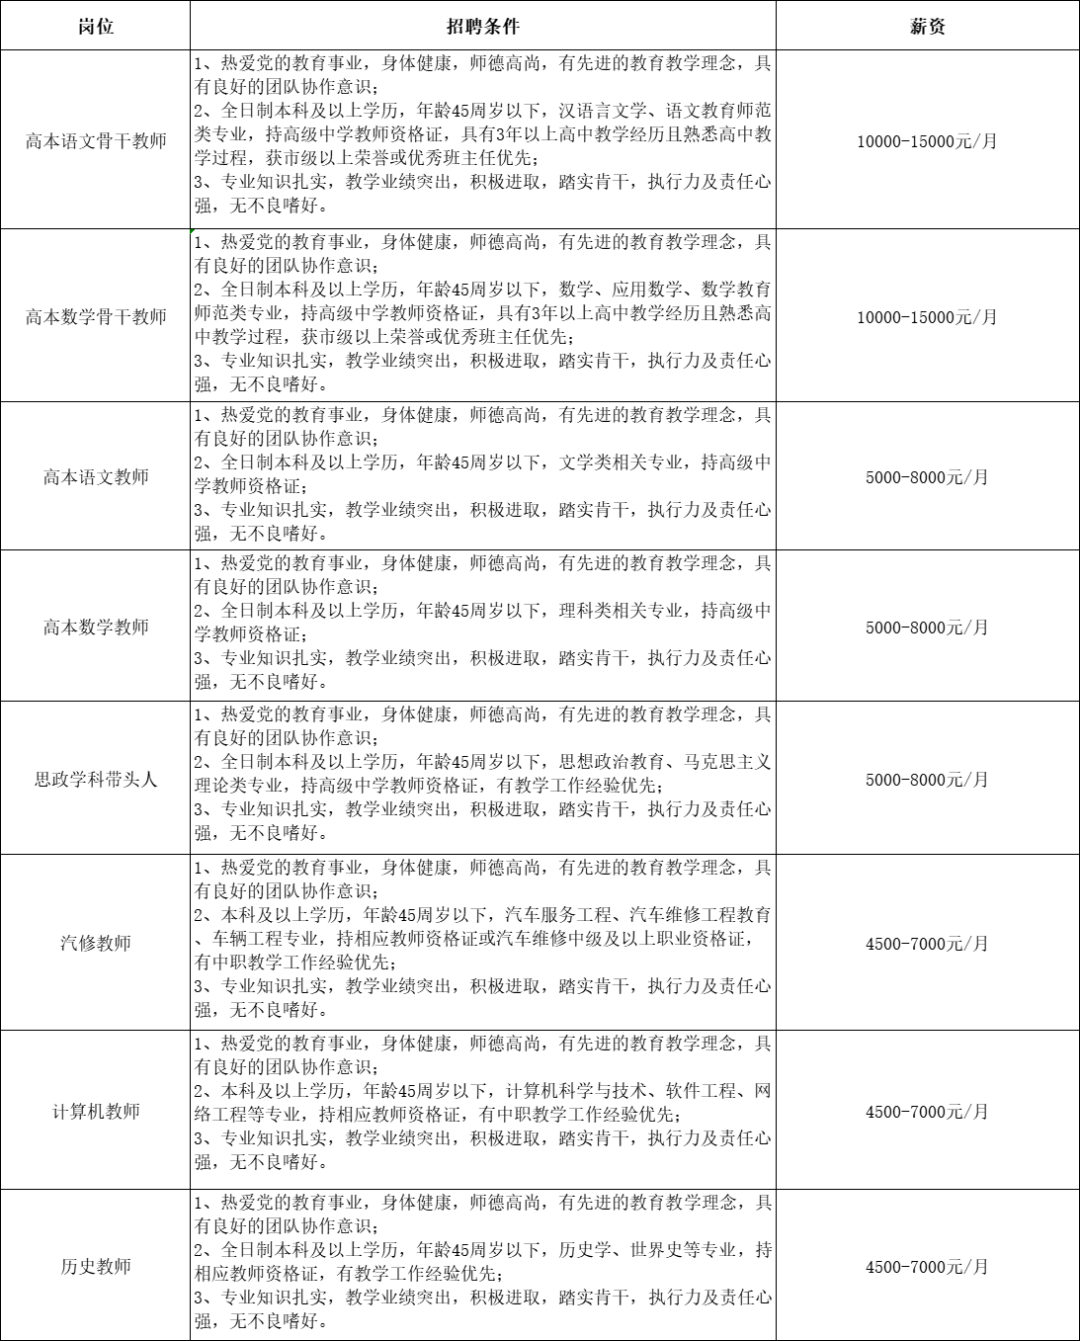 2022年秋季学期惠州市财经职业技术学校教师招聘公告